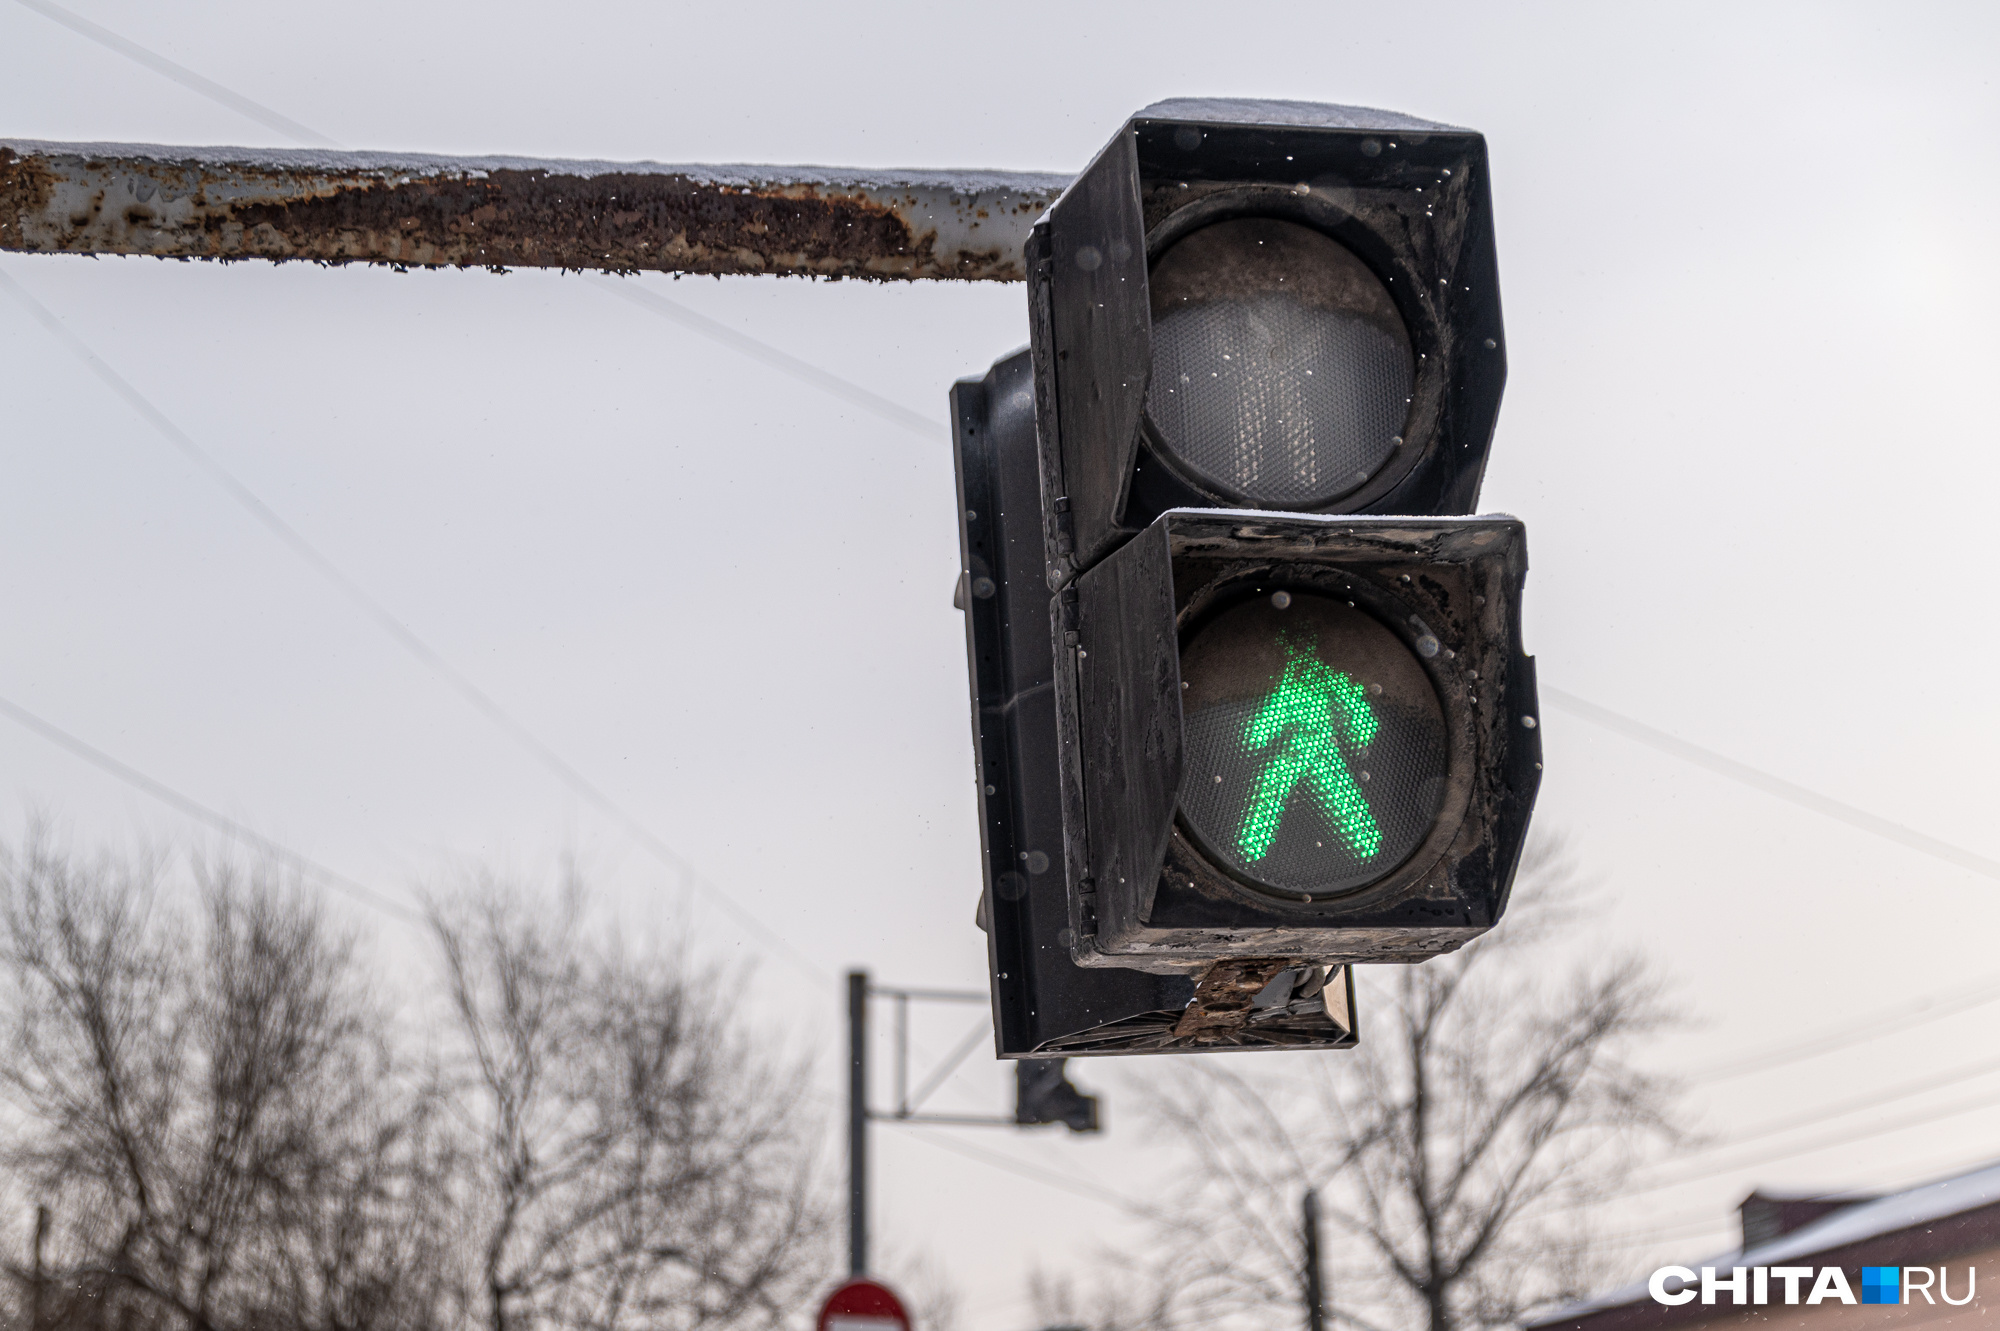 Три светофора в Чите обесточило из-за аварии